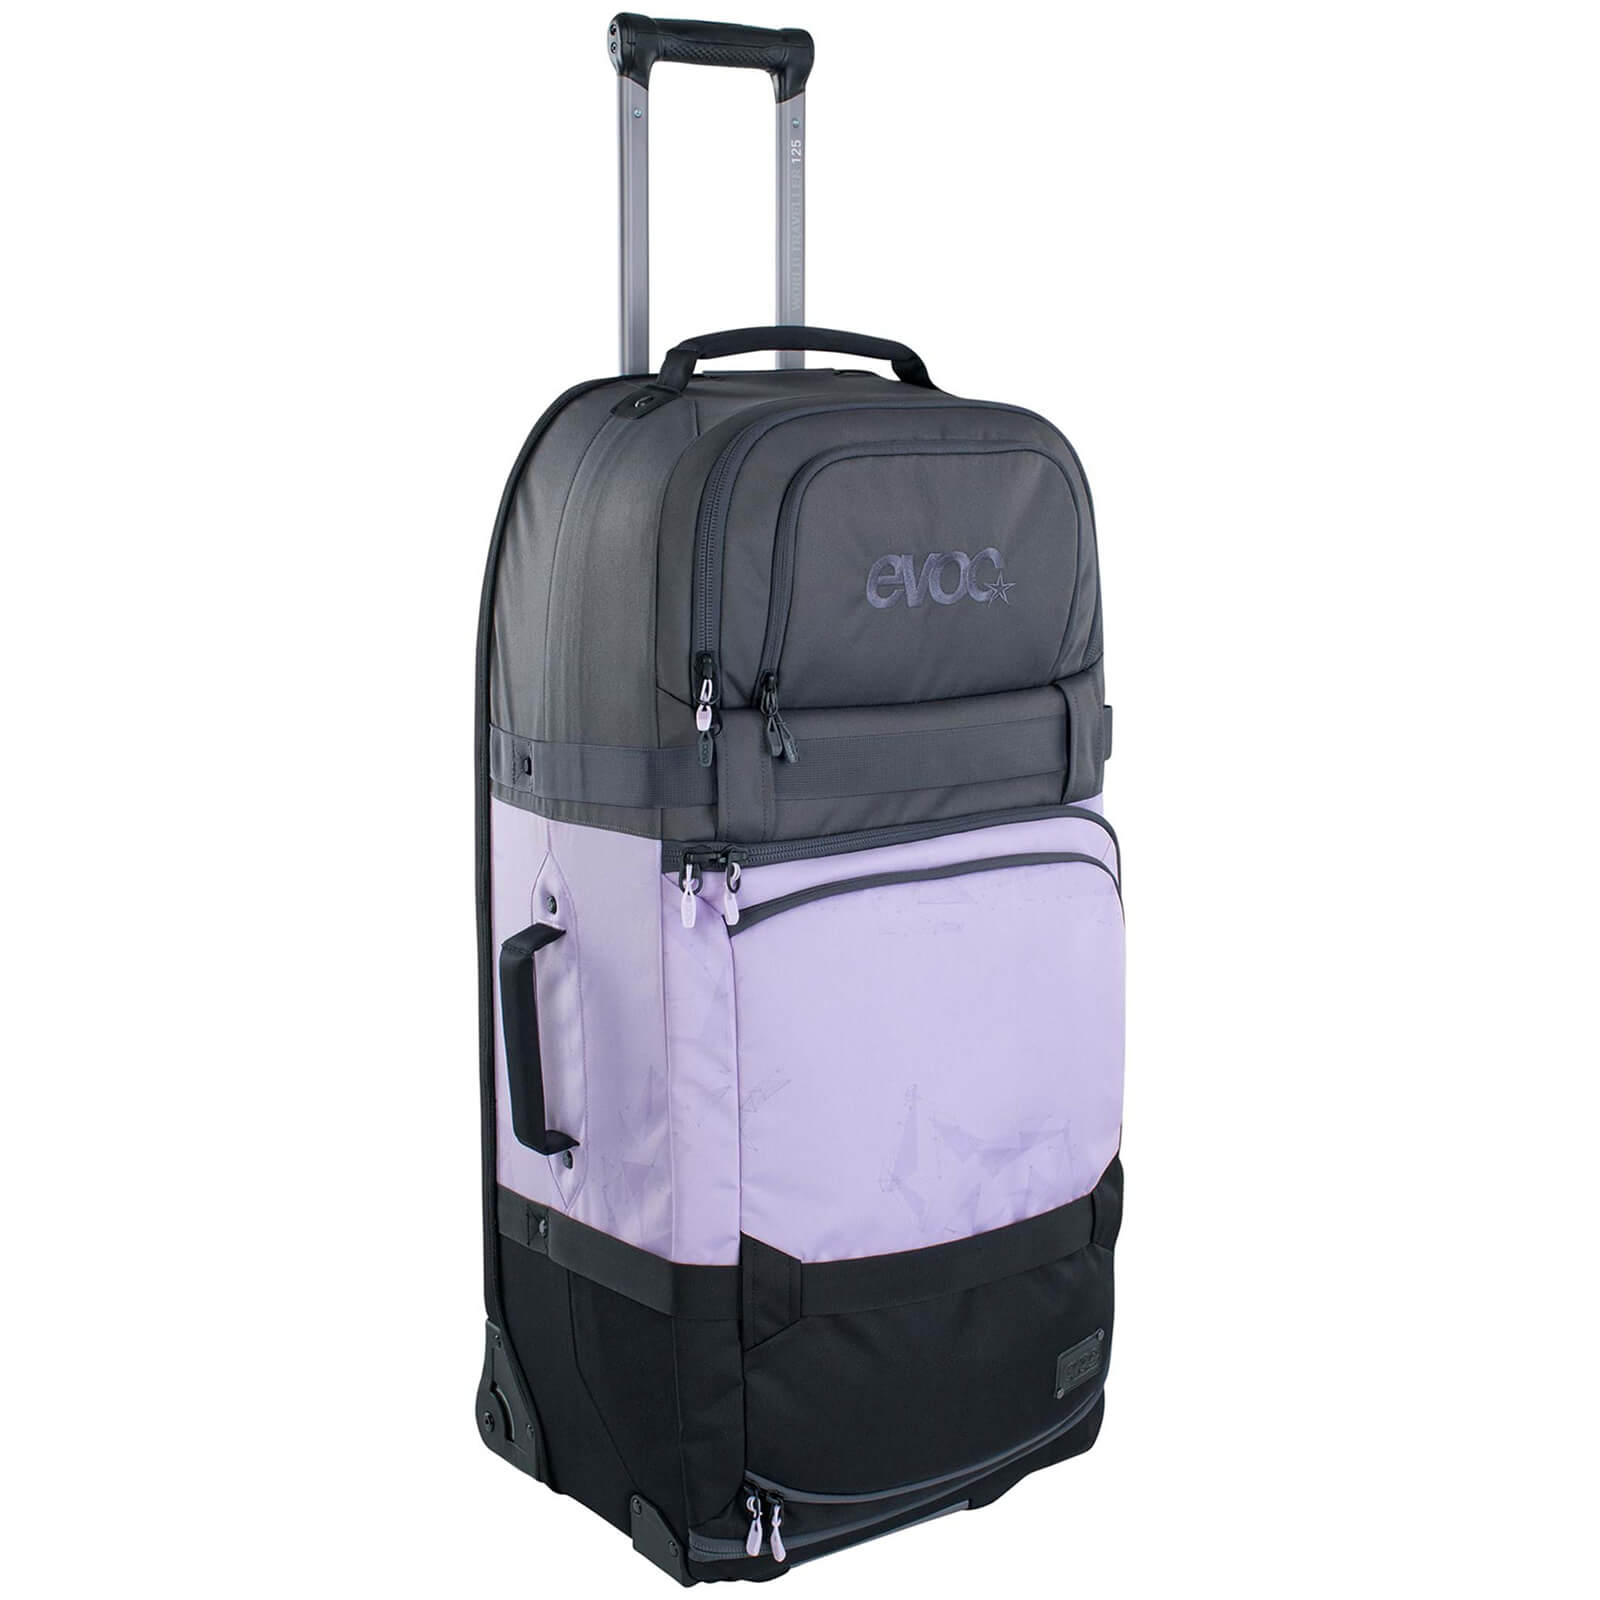 Evoc 125L World Traveller Bag - Carbon Grey/Purple Rose/Black